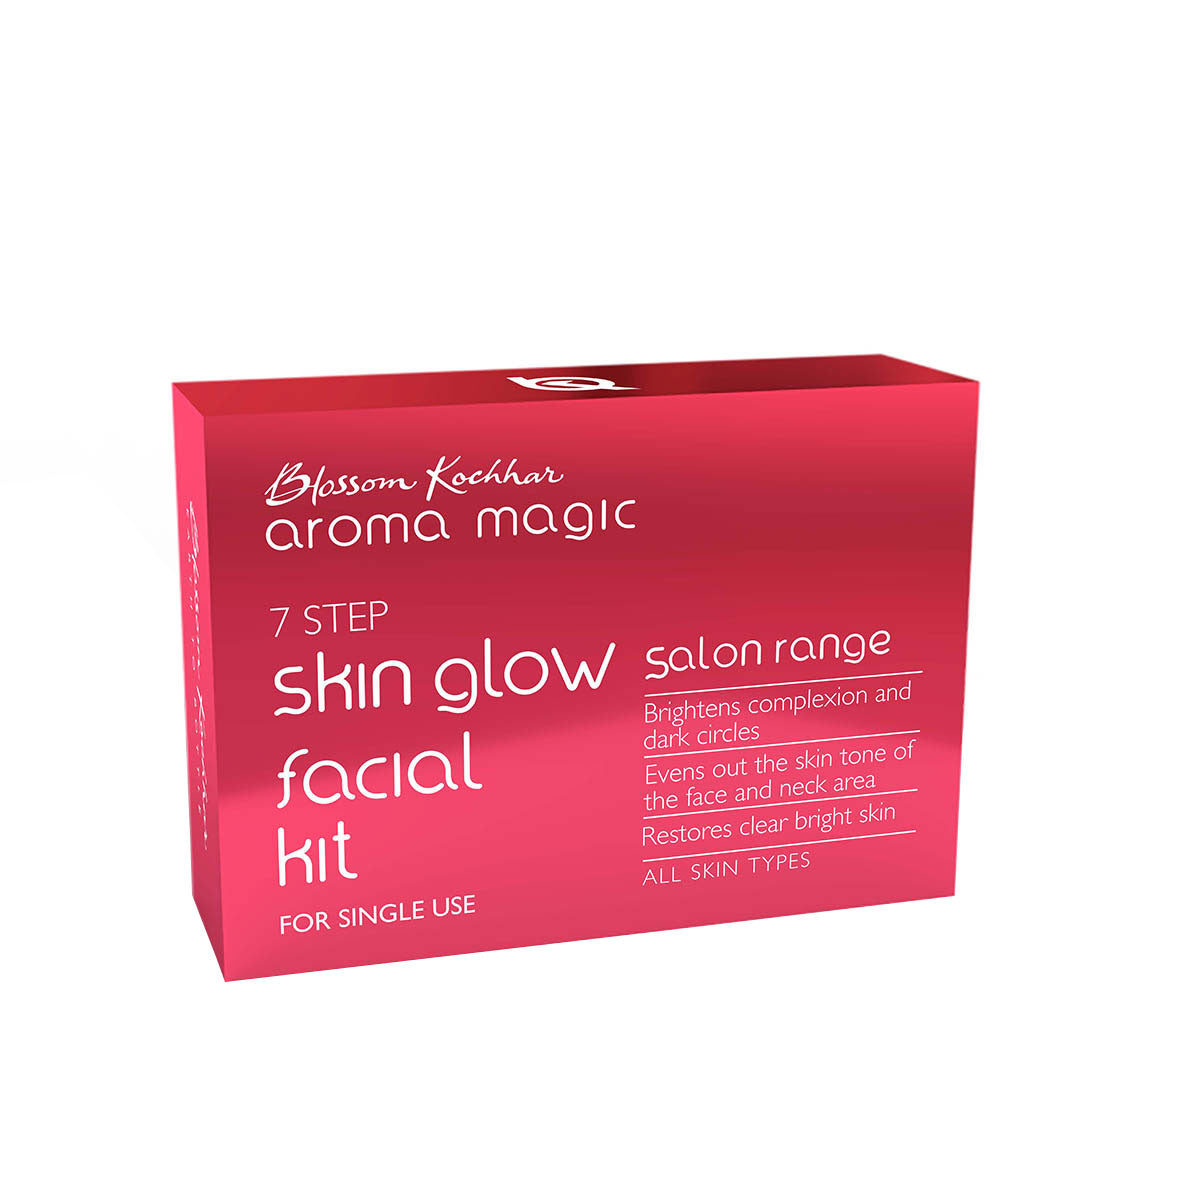 Skin glow facial kit